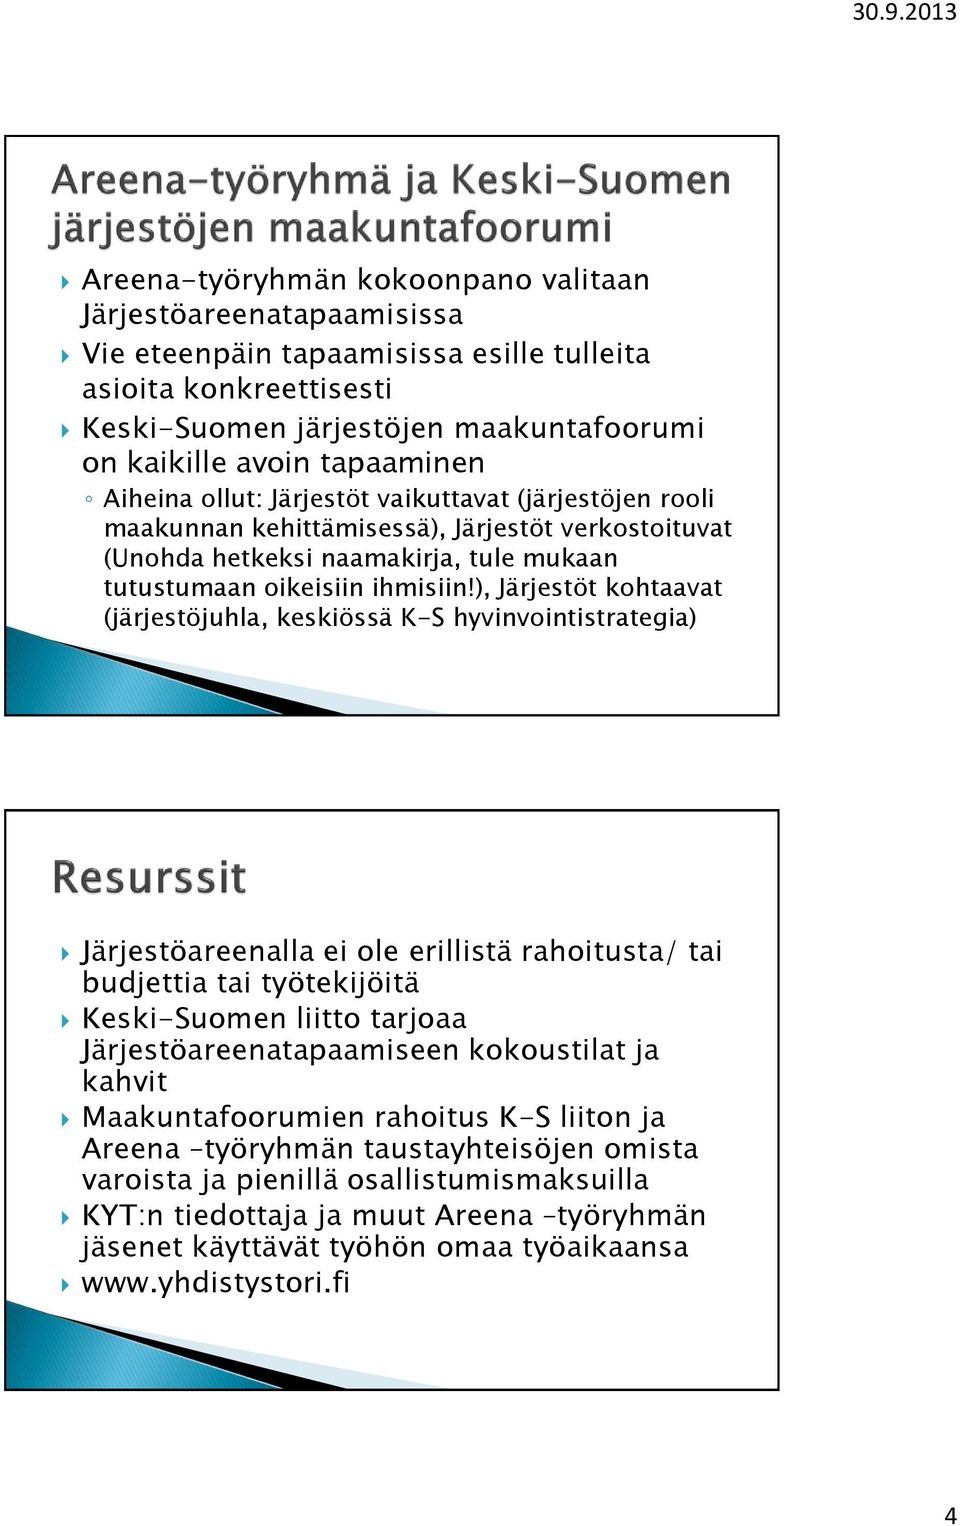 ), Järjestöt kohtaavat (järjestöjuhla, keskiössä K-S hyvinvointistrategia) Järjestöareenalla ei ole erillistä rahoitusta/ tai budjettia tai työtekijöitä Keski-Suomen liitto tarjoaa